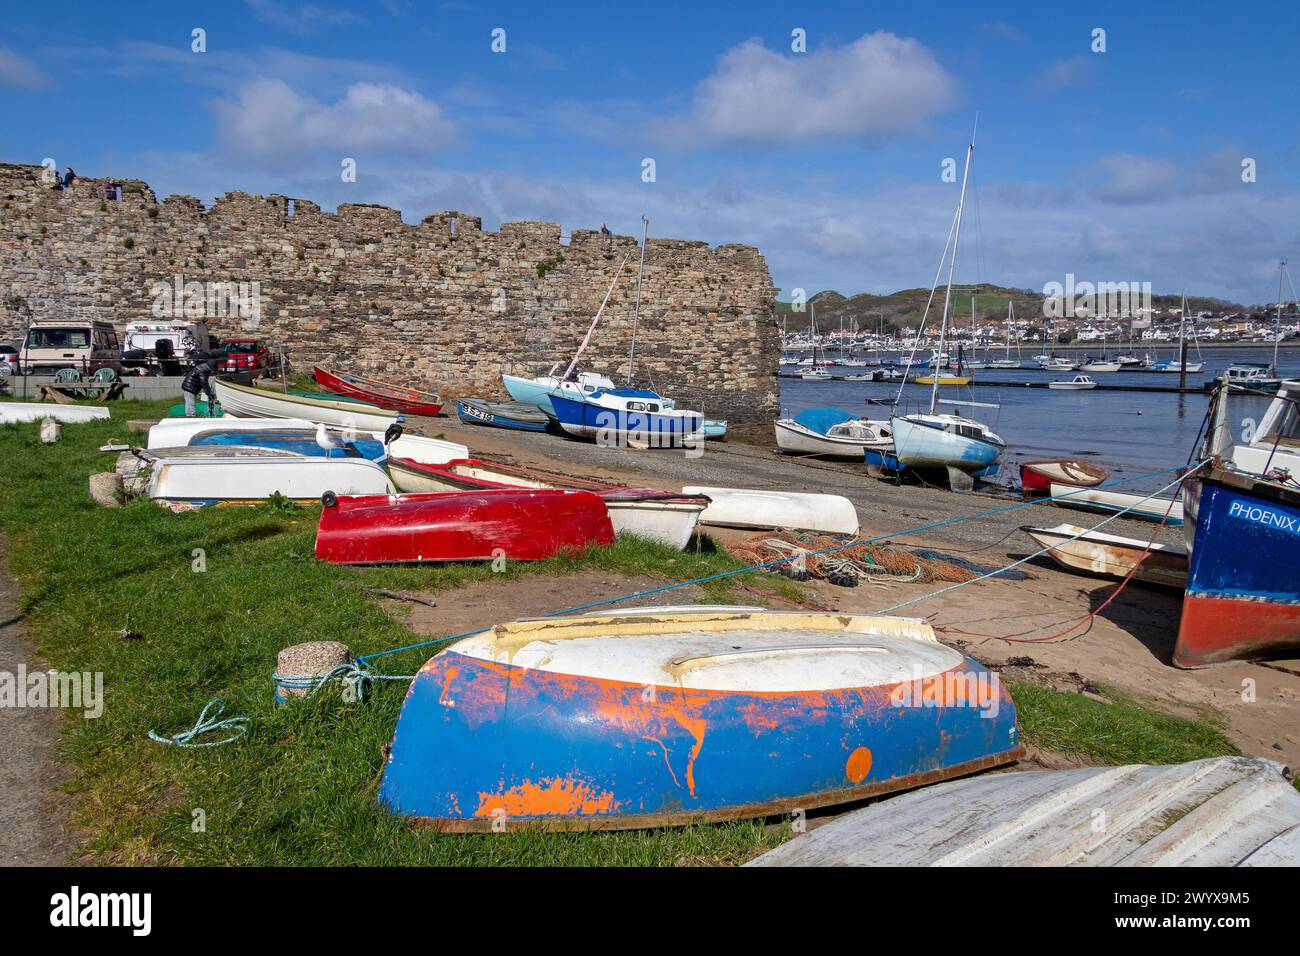 Mur de la ville, port de pêche, Conwy, pays de Galles, Grande-Bretagne Banque D'Images